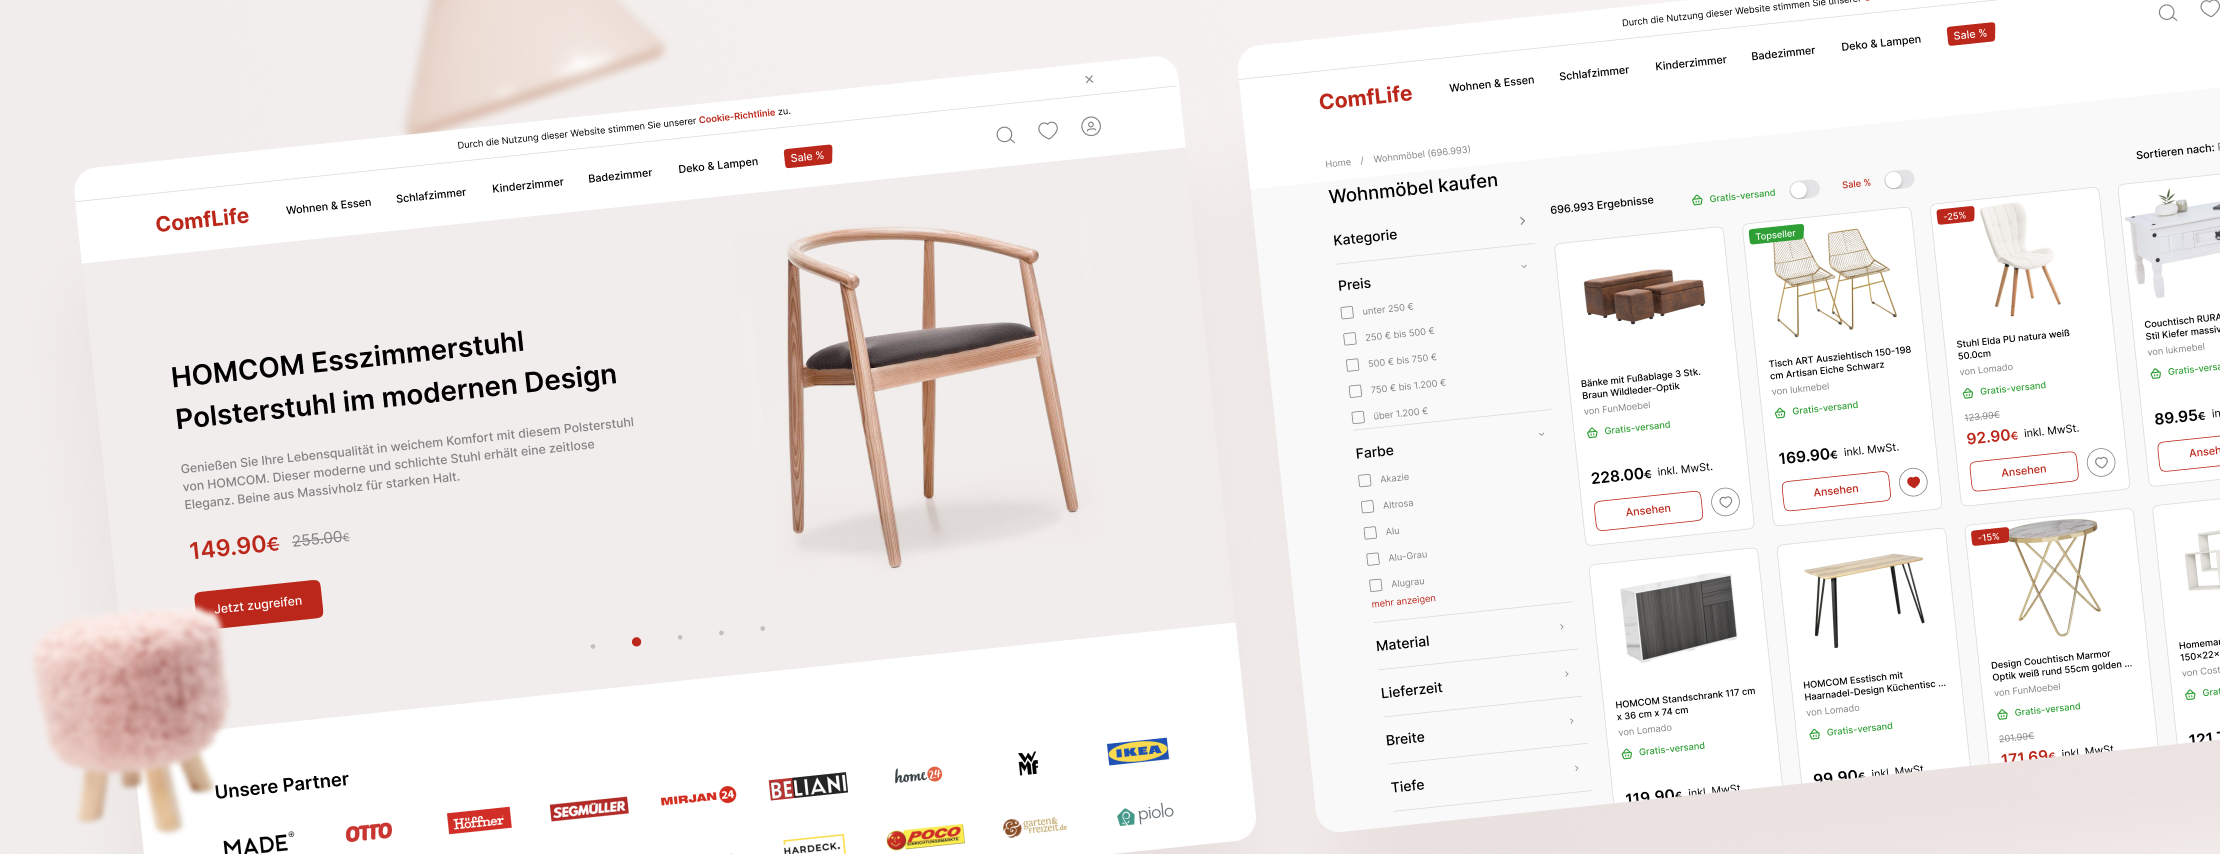 Eine e-Commerce-Plattform für Möbelhandel